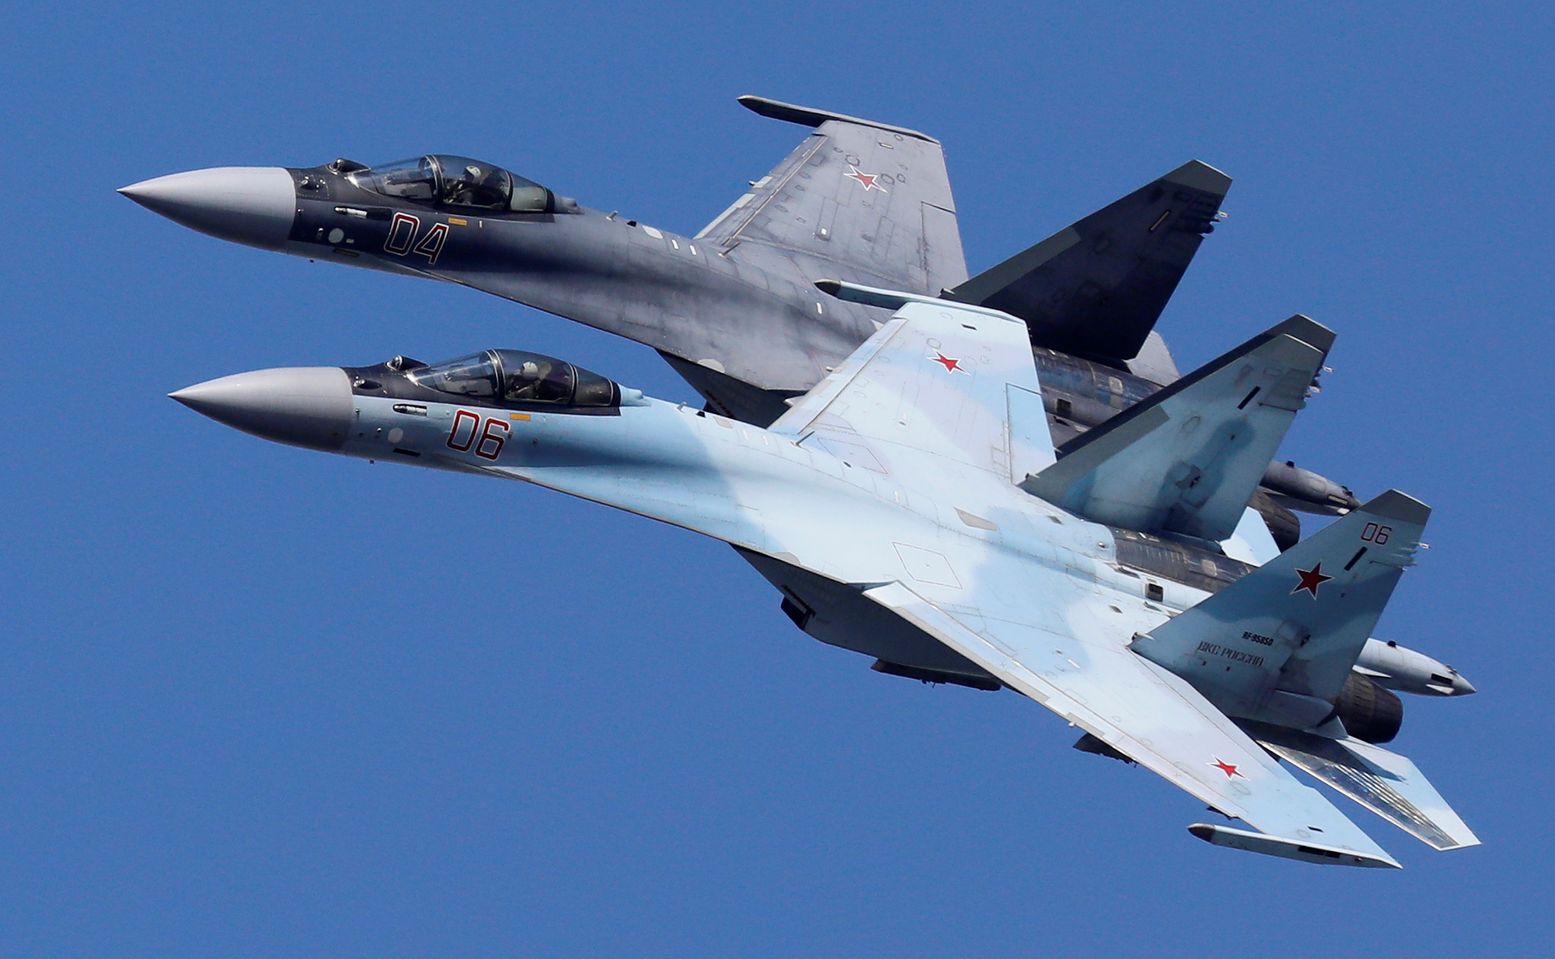 Όλη η οικογένεια των Sukhoi σε απαρτία: Su-27, Su-30, Su-34 και Su-35S εκτελούν βολές και ελιγμούς (βίντεο)